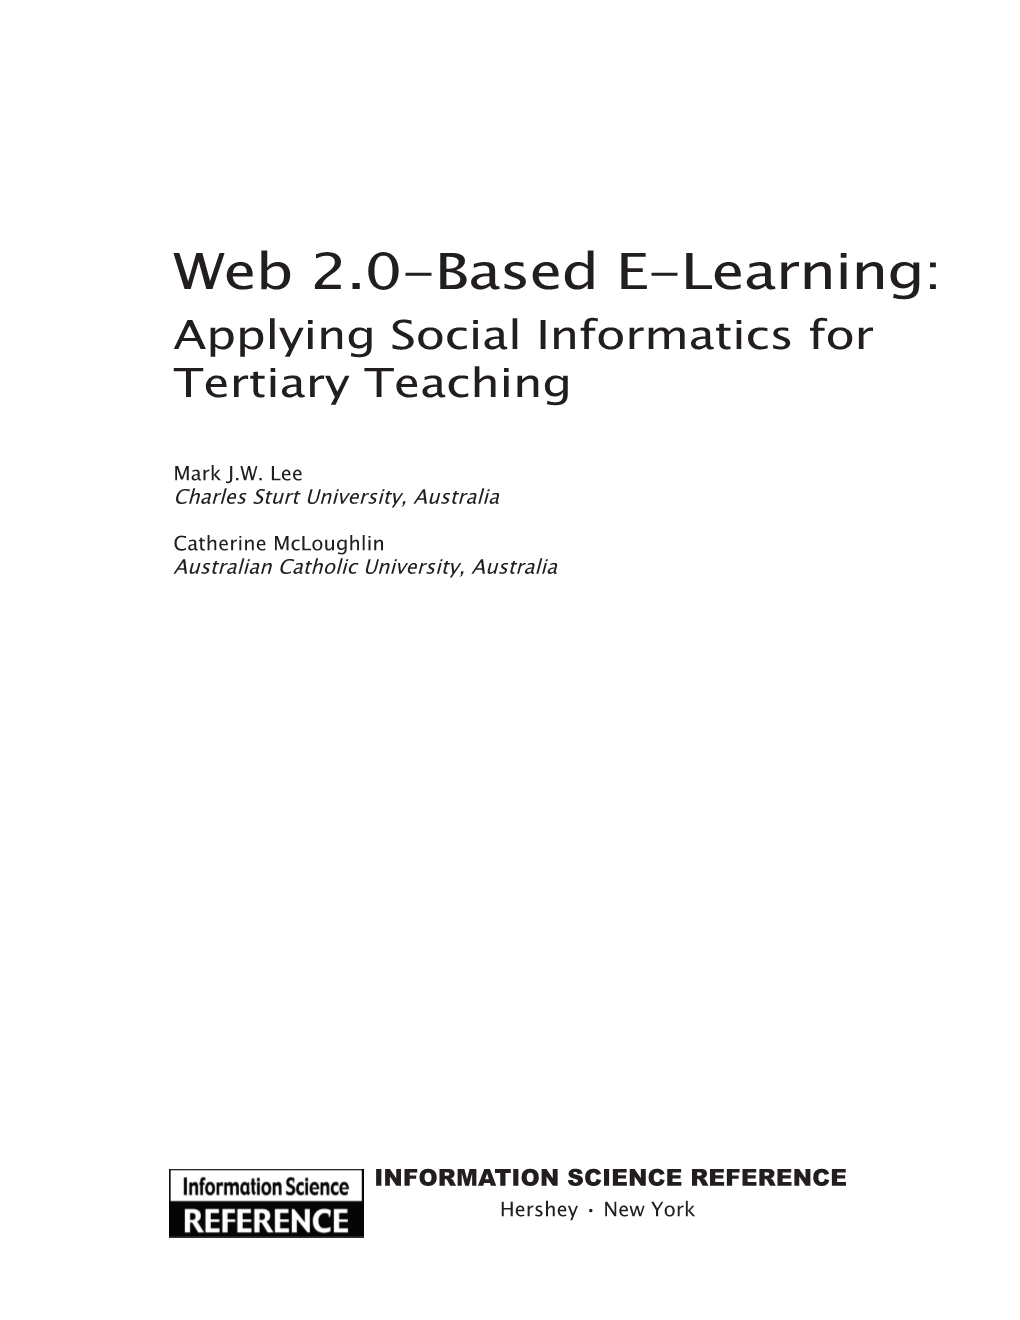 Web 2.0-Based E-Learning: Applying Social Informatics for Tertiary Teaching